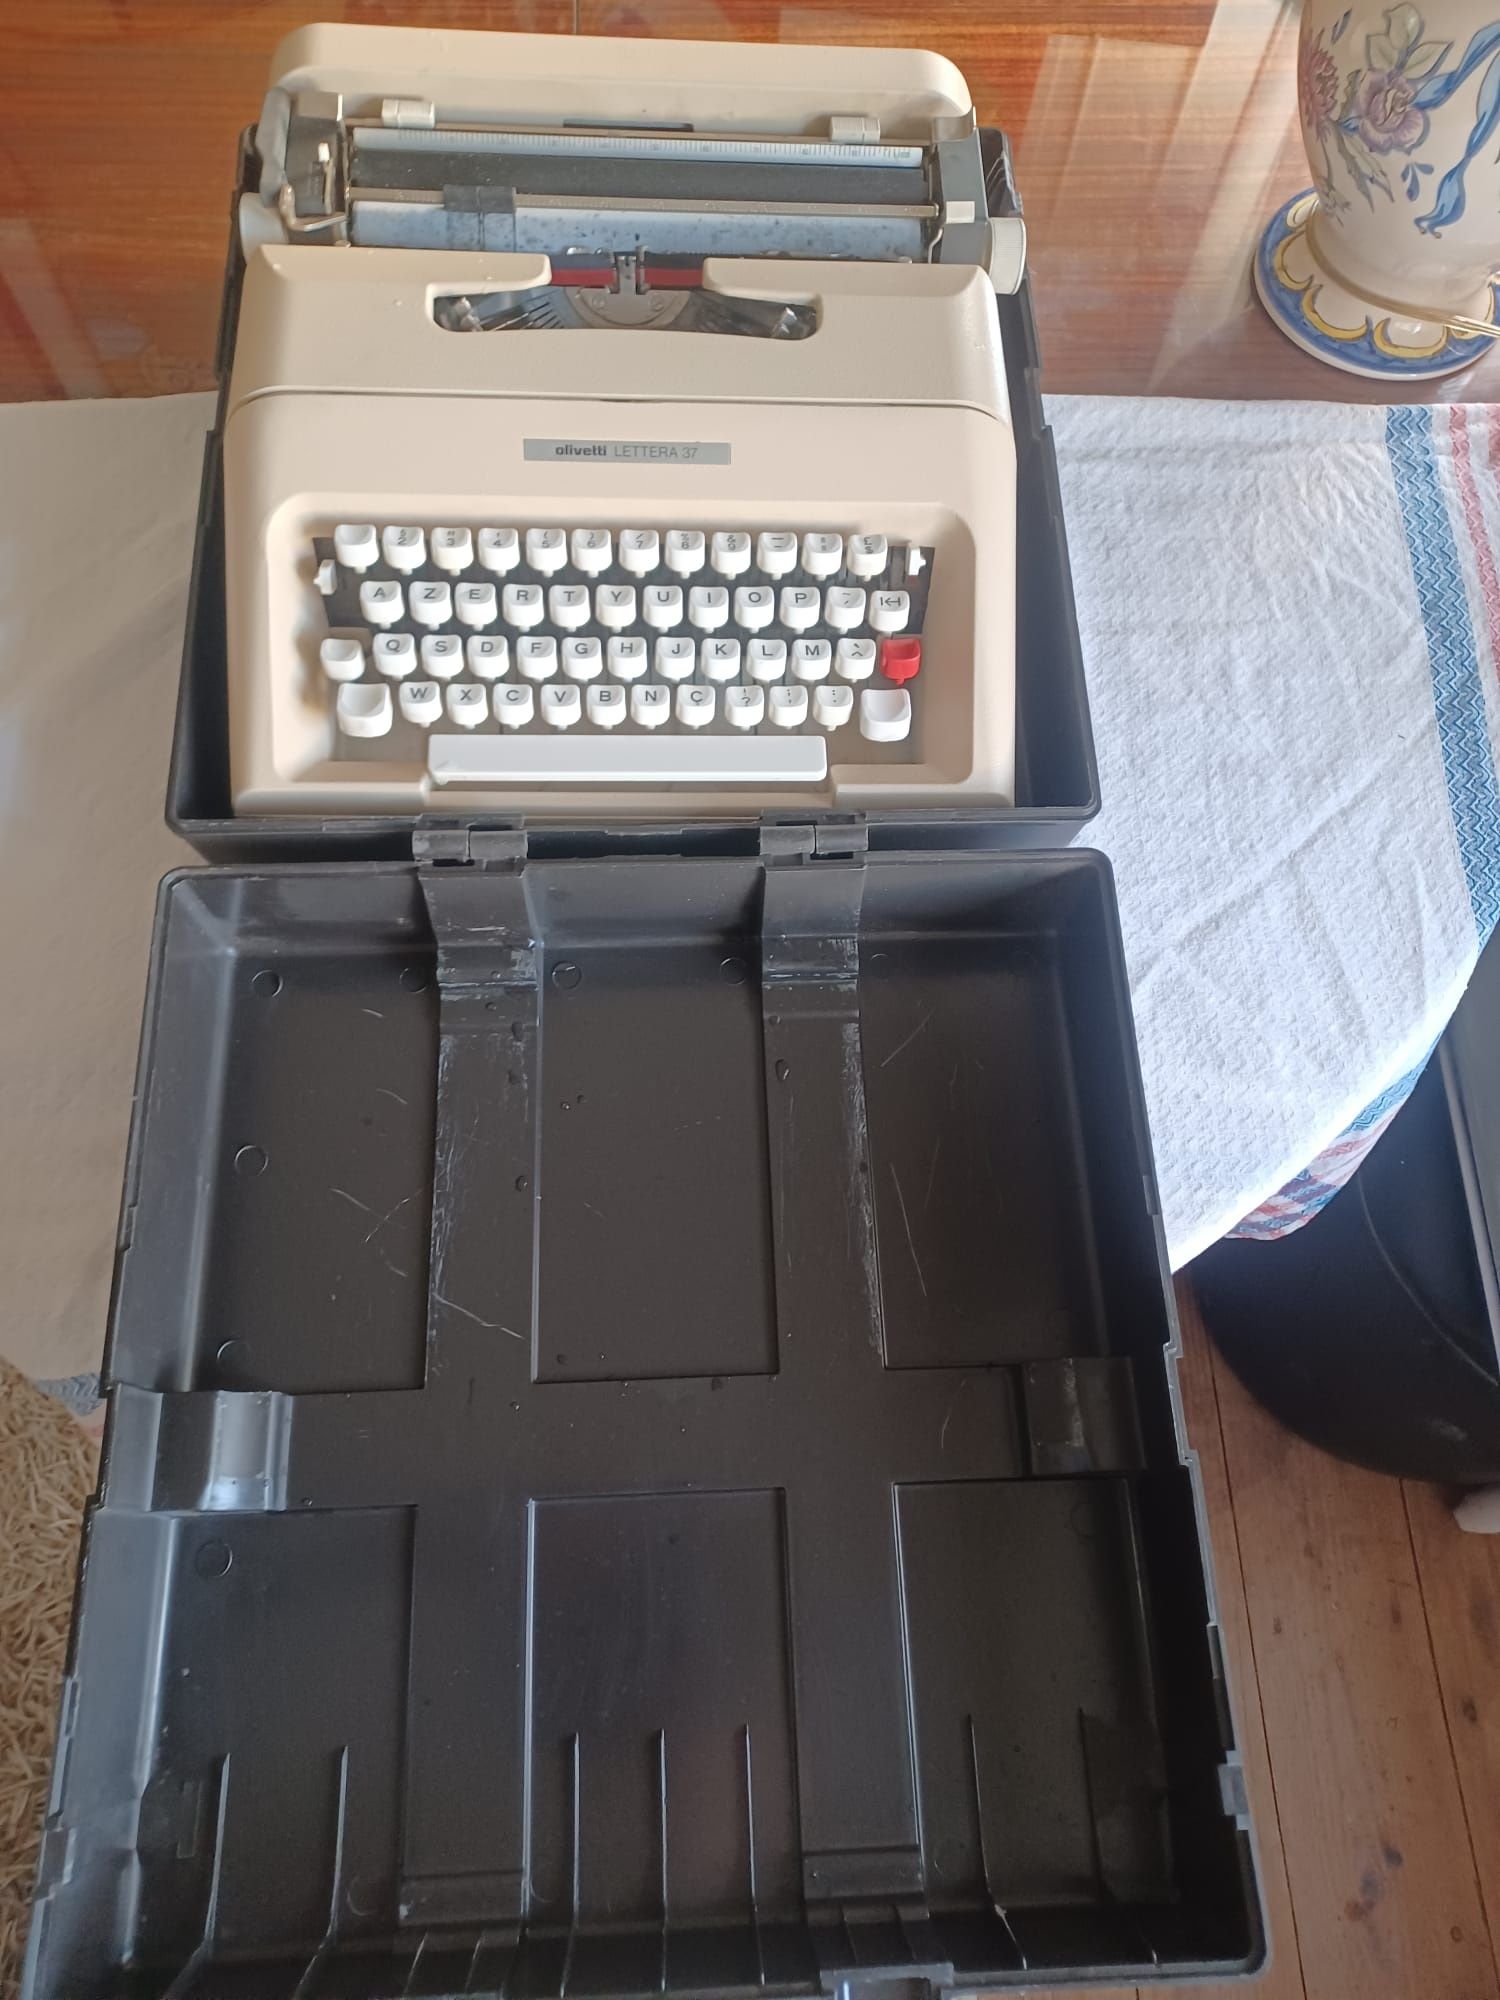 Máquina de escrever Olivetti Lettera 37